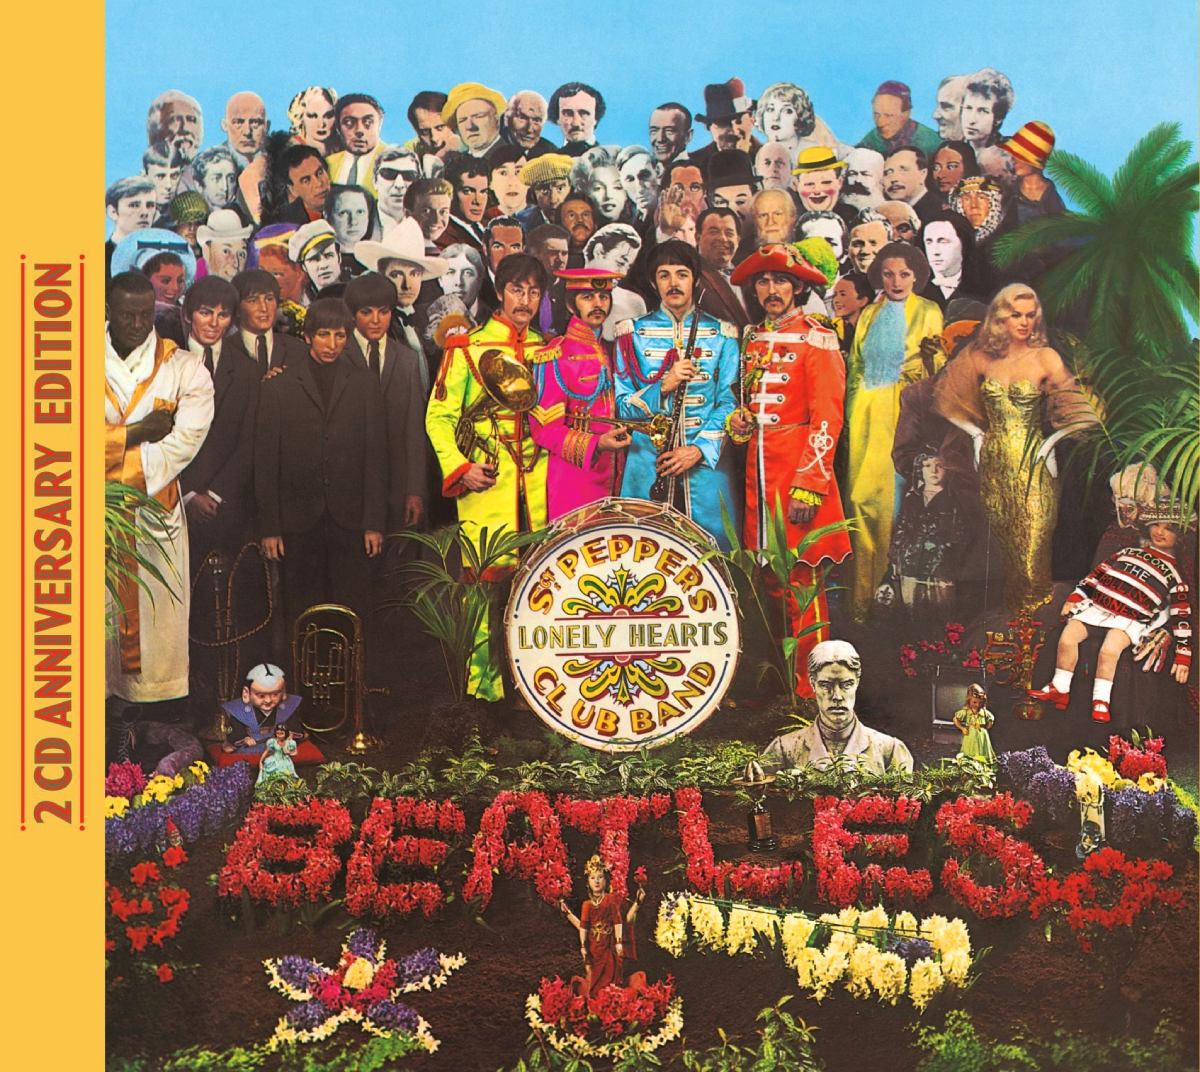 Sgt. Pepper's Lonely Hearts Club Band (álbum de los Beatles)